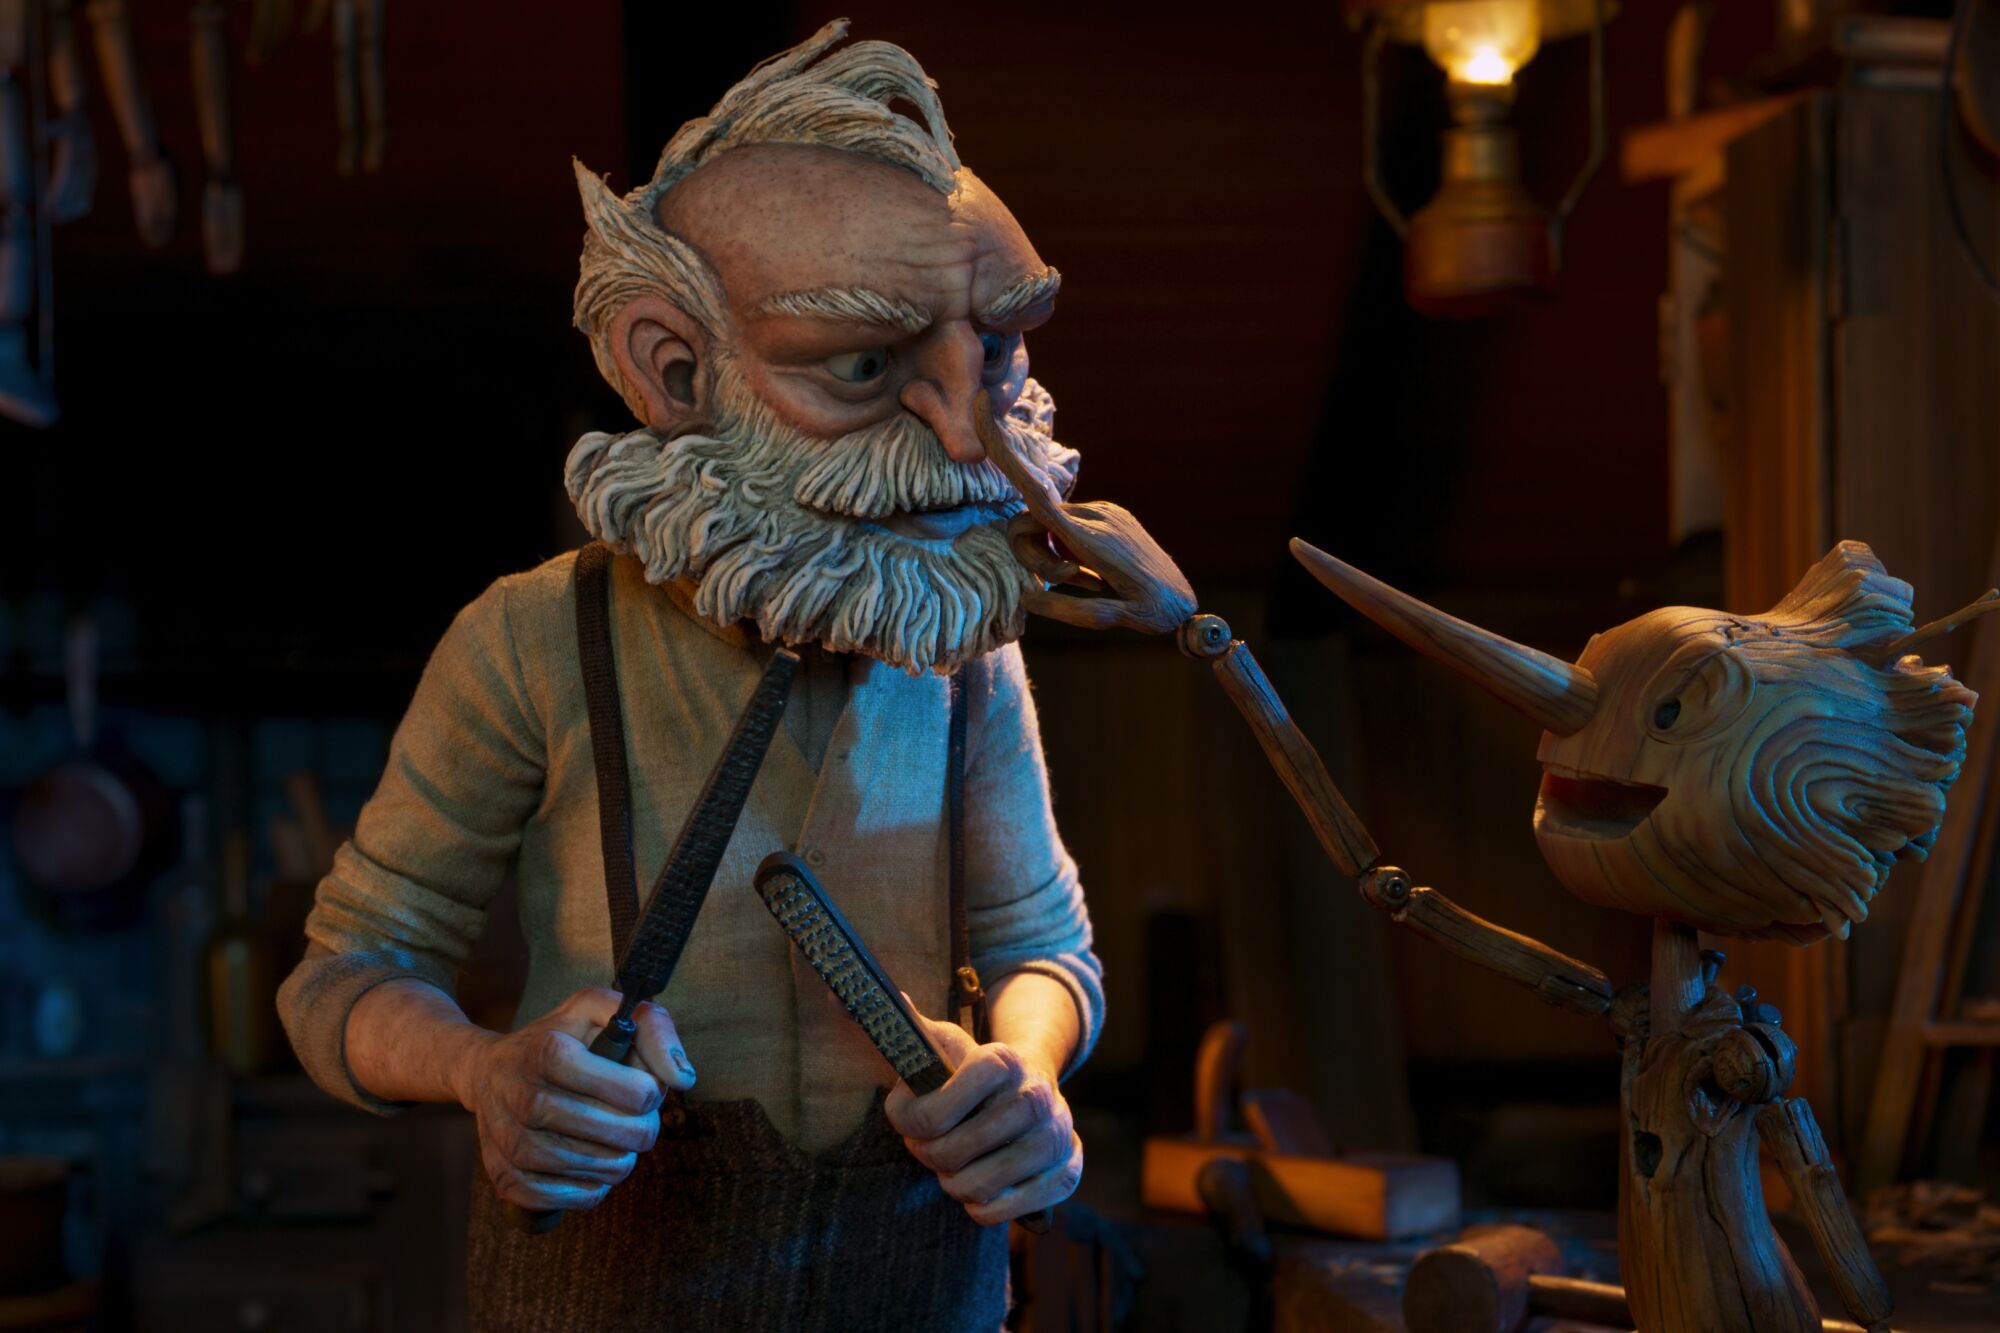 Una escena de "Guillermo del Toro's Pinocchio", hecha completamente en 'stop motion'.